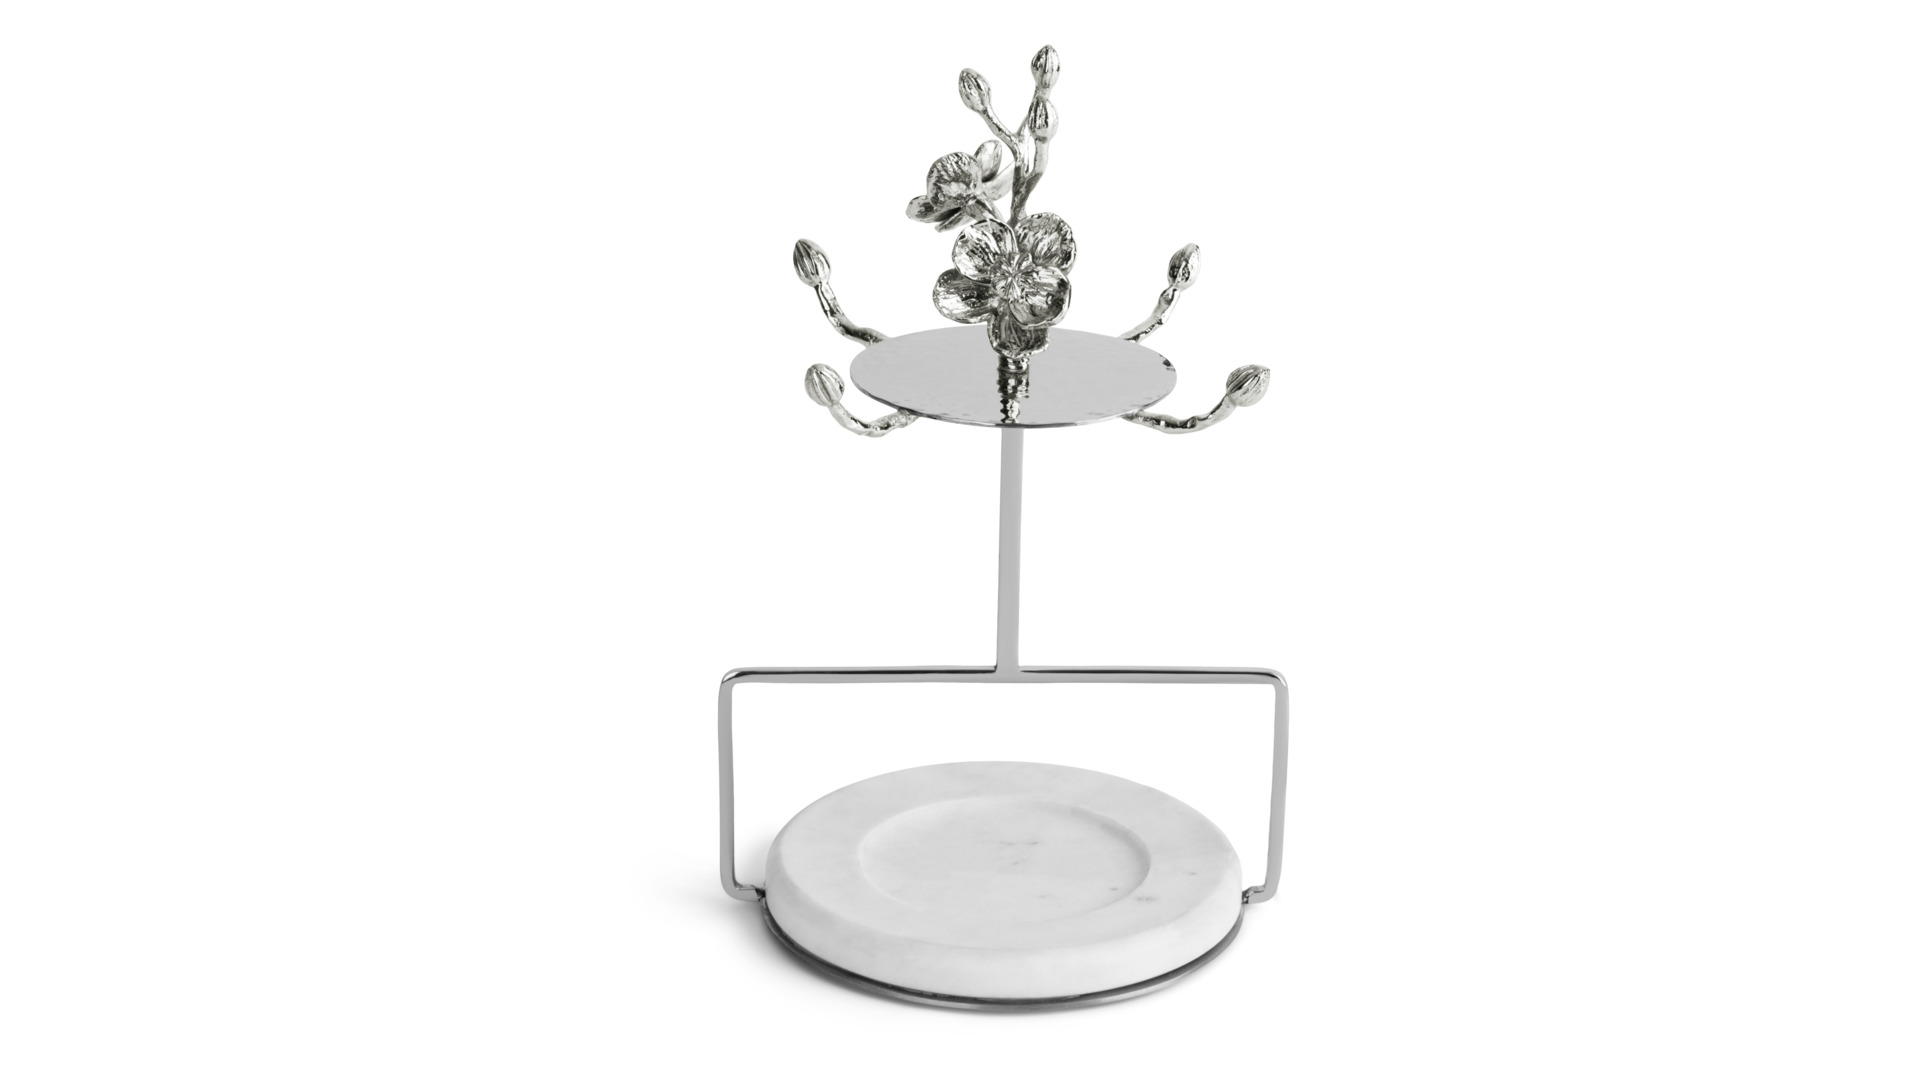 Набор кружек с блюдцами на подставке Michael Aram Голубая орхидея 9 предметов h 23 см, фарфор